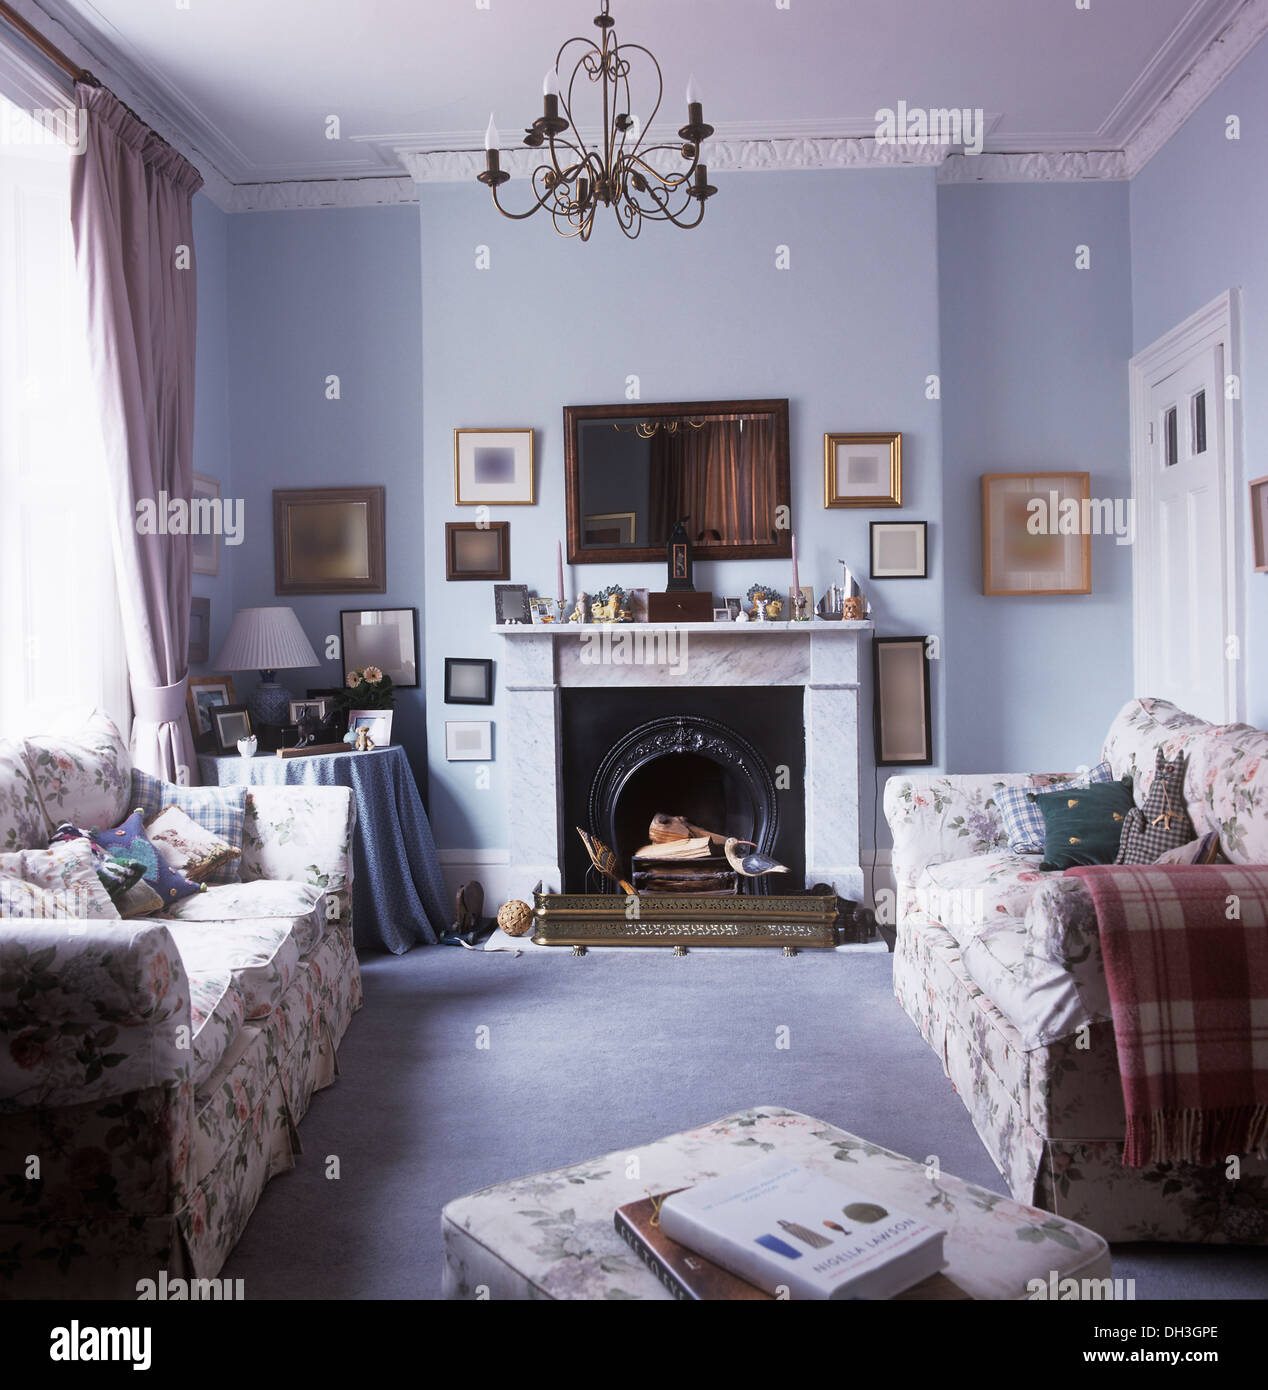 Canapés de fleurs de chaque côté de la cheminée de marbre dans les petites, bleu pâle, salon avec tapis bleu pâle lustre métallique Banque D'Images